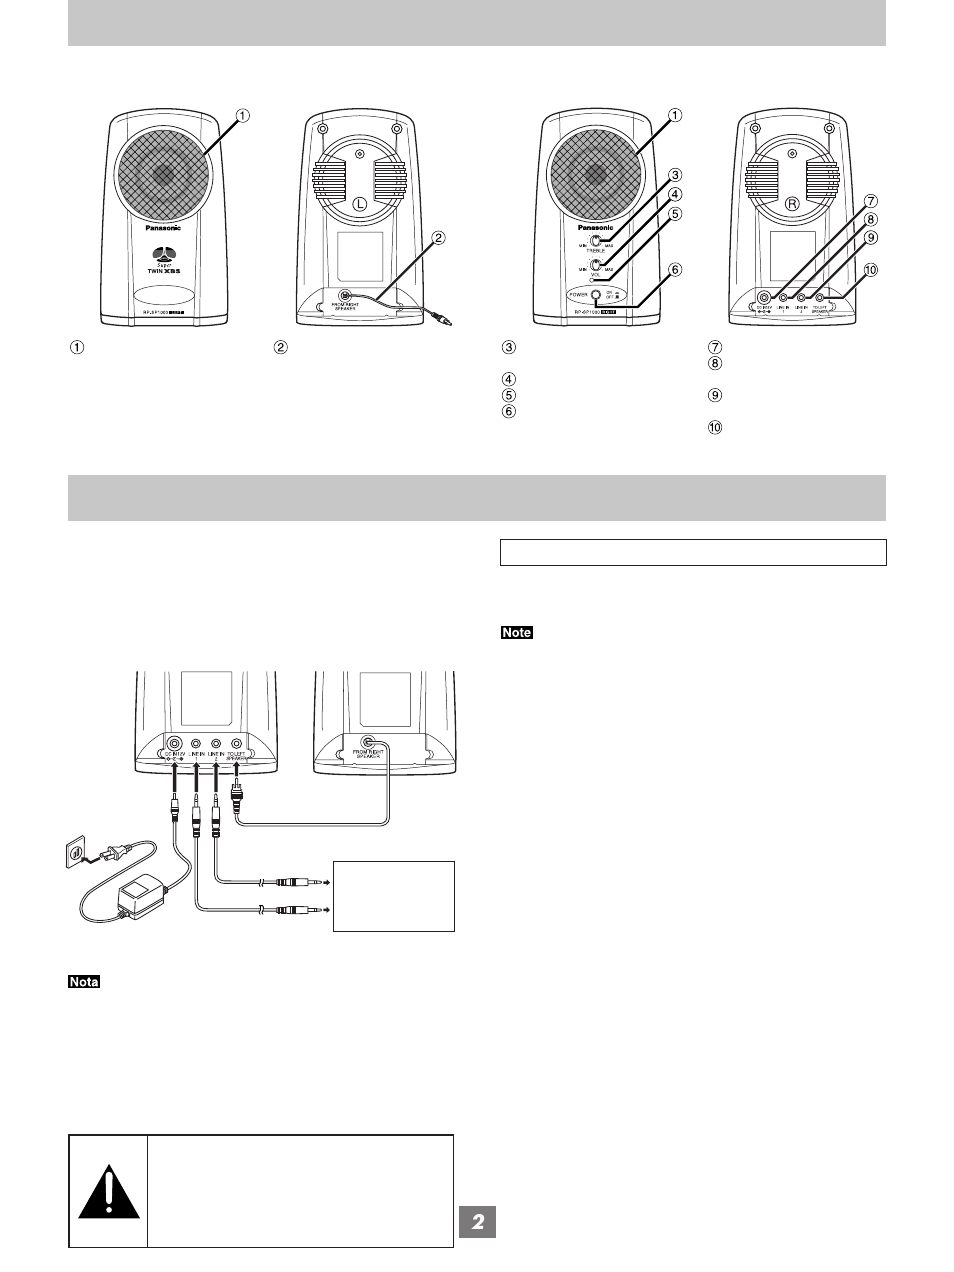 Emplacement des commandes raccordement | Panasonic RP-SP1000 Manuel d'utilisation | Page 6 / 8